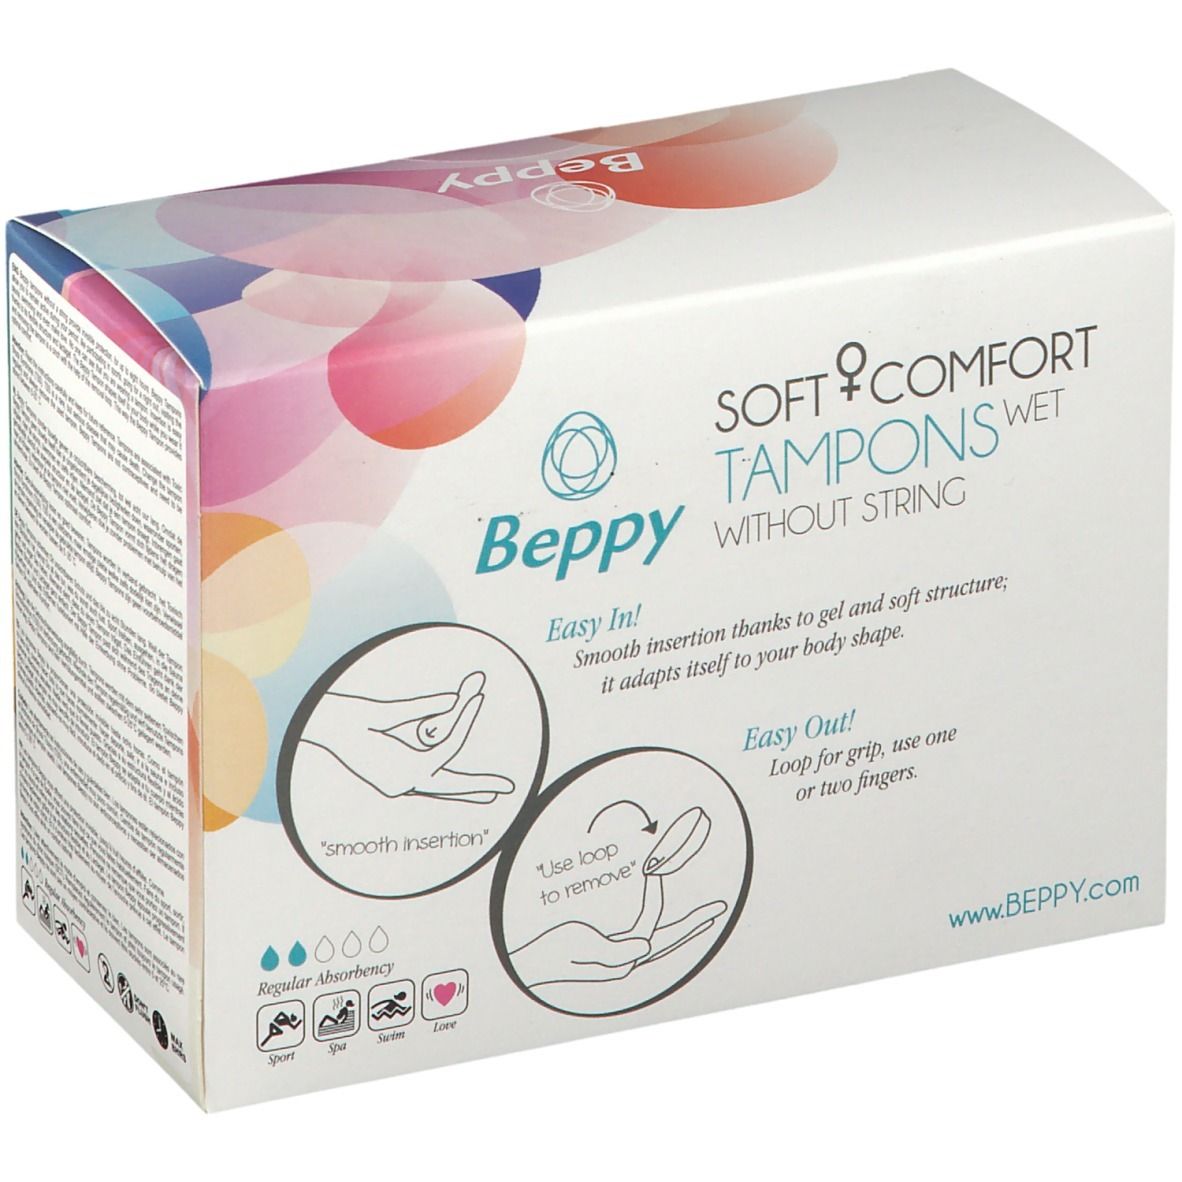 Beppy Comfort Tampon wet